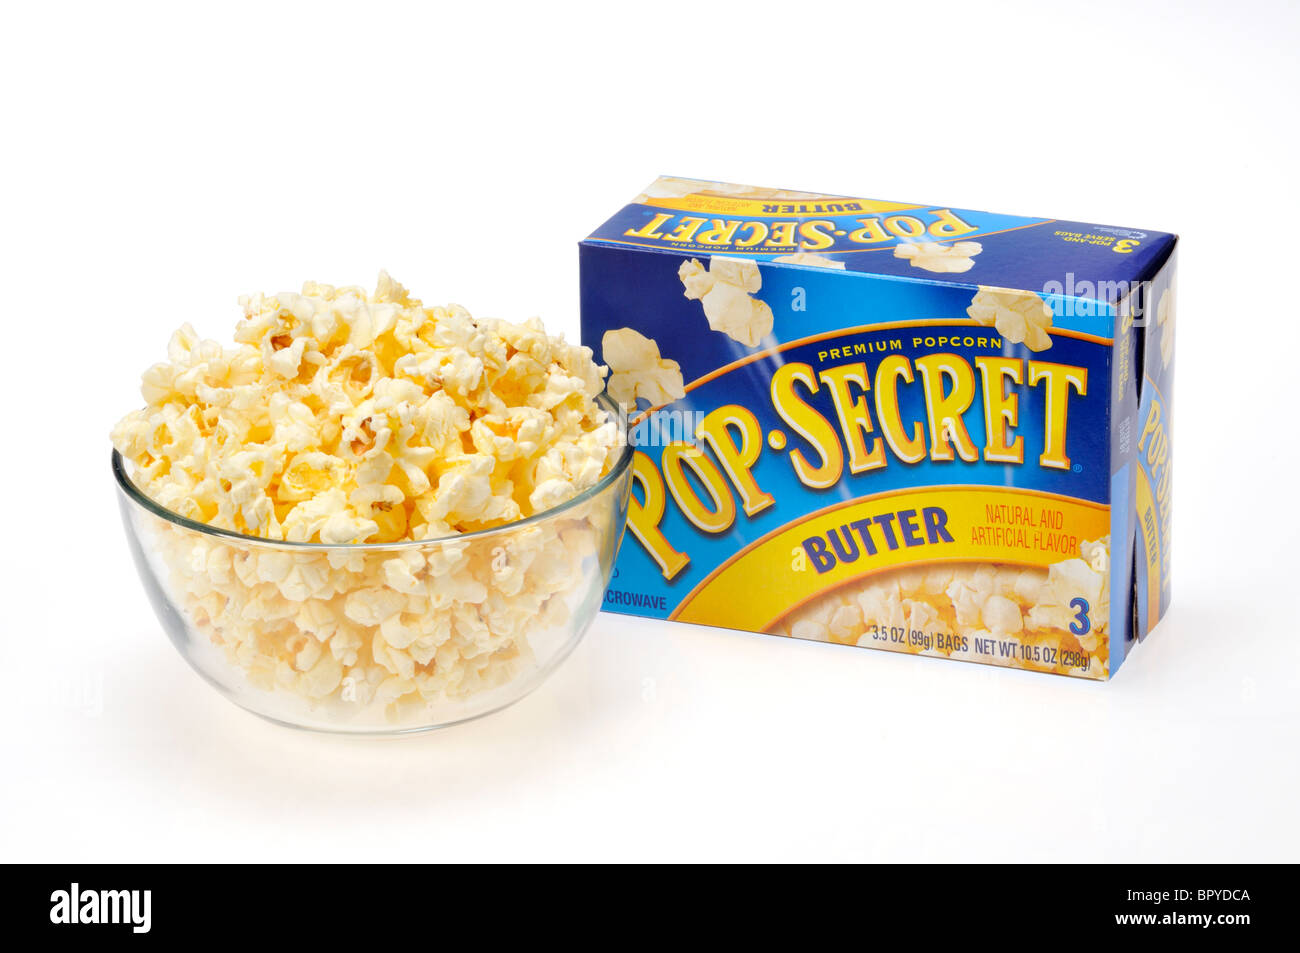 Un vaso di vetro riempito con popcorn a microonde una scatola di Pop pop corn segreta dietro di esso su sfondo bianco, tagliato fuori. Foto Stock